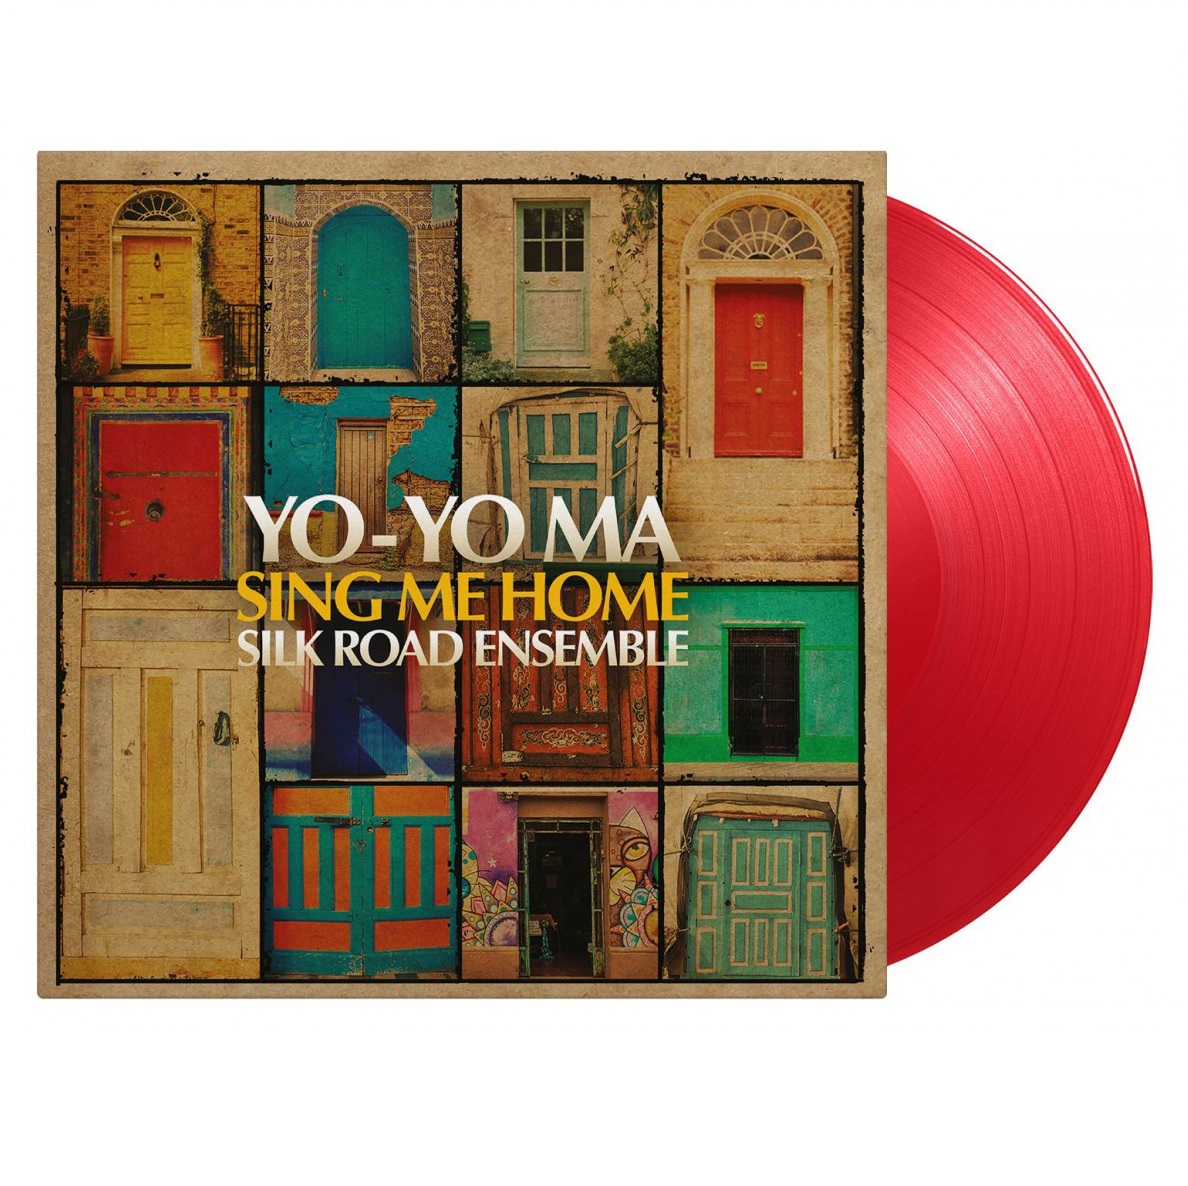 Yo-Yo Ma & The Silk Road Ensemble (요요 마 & 실크로드 앙상블) - Sing Me Home [레드 컬러 2LP]